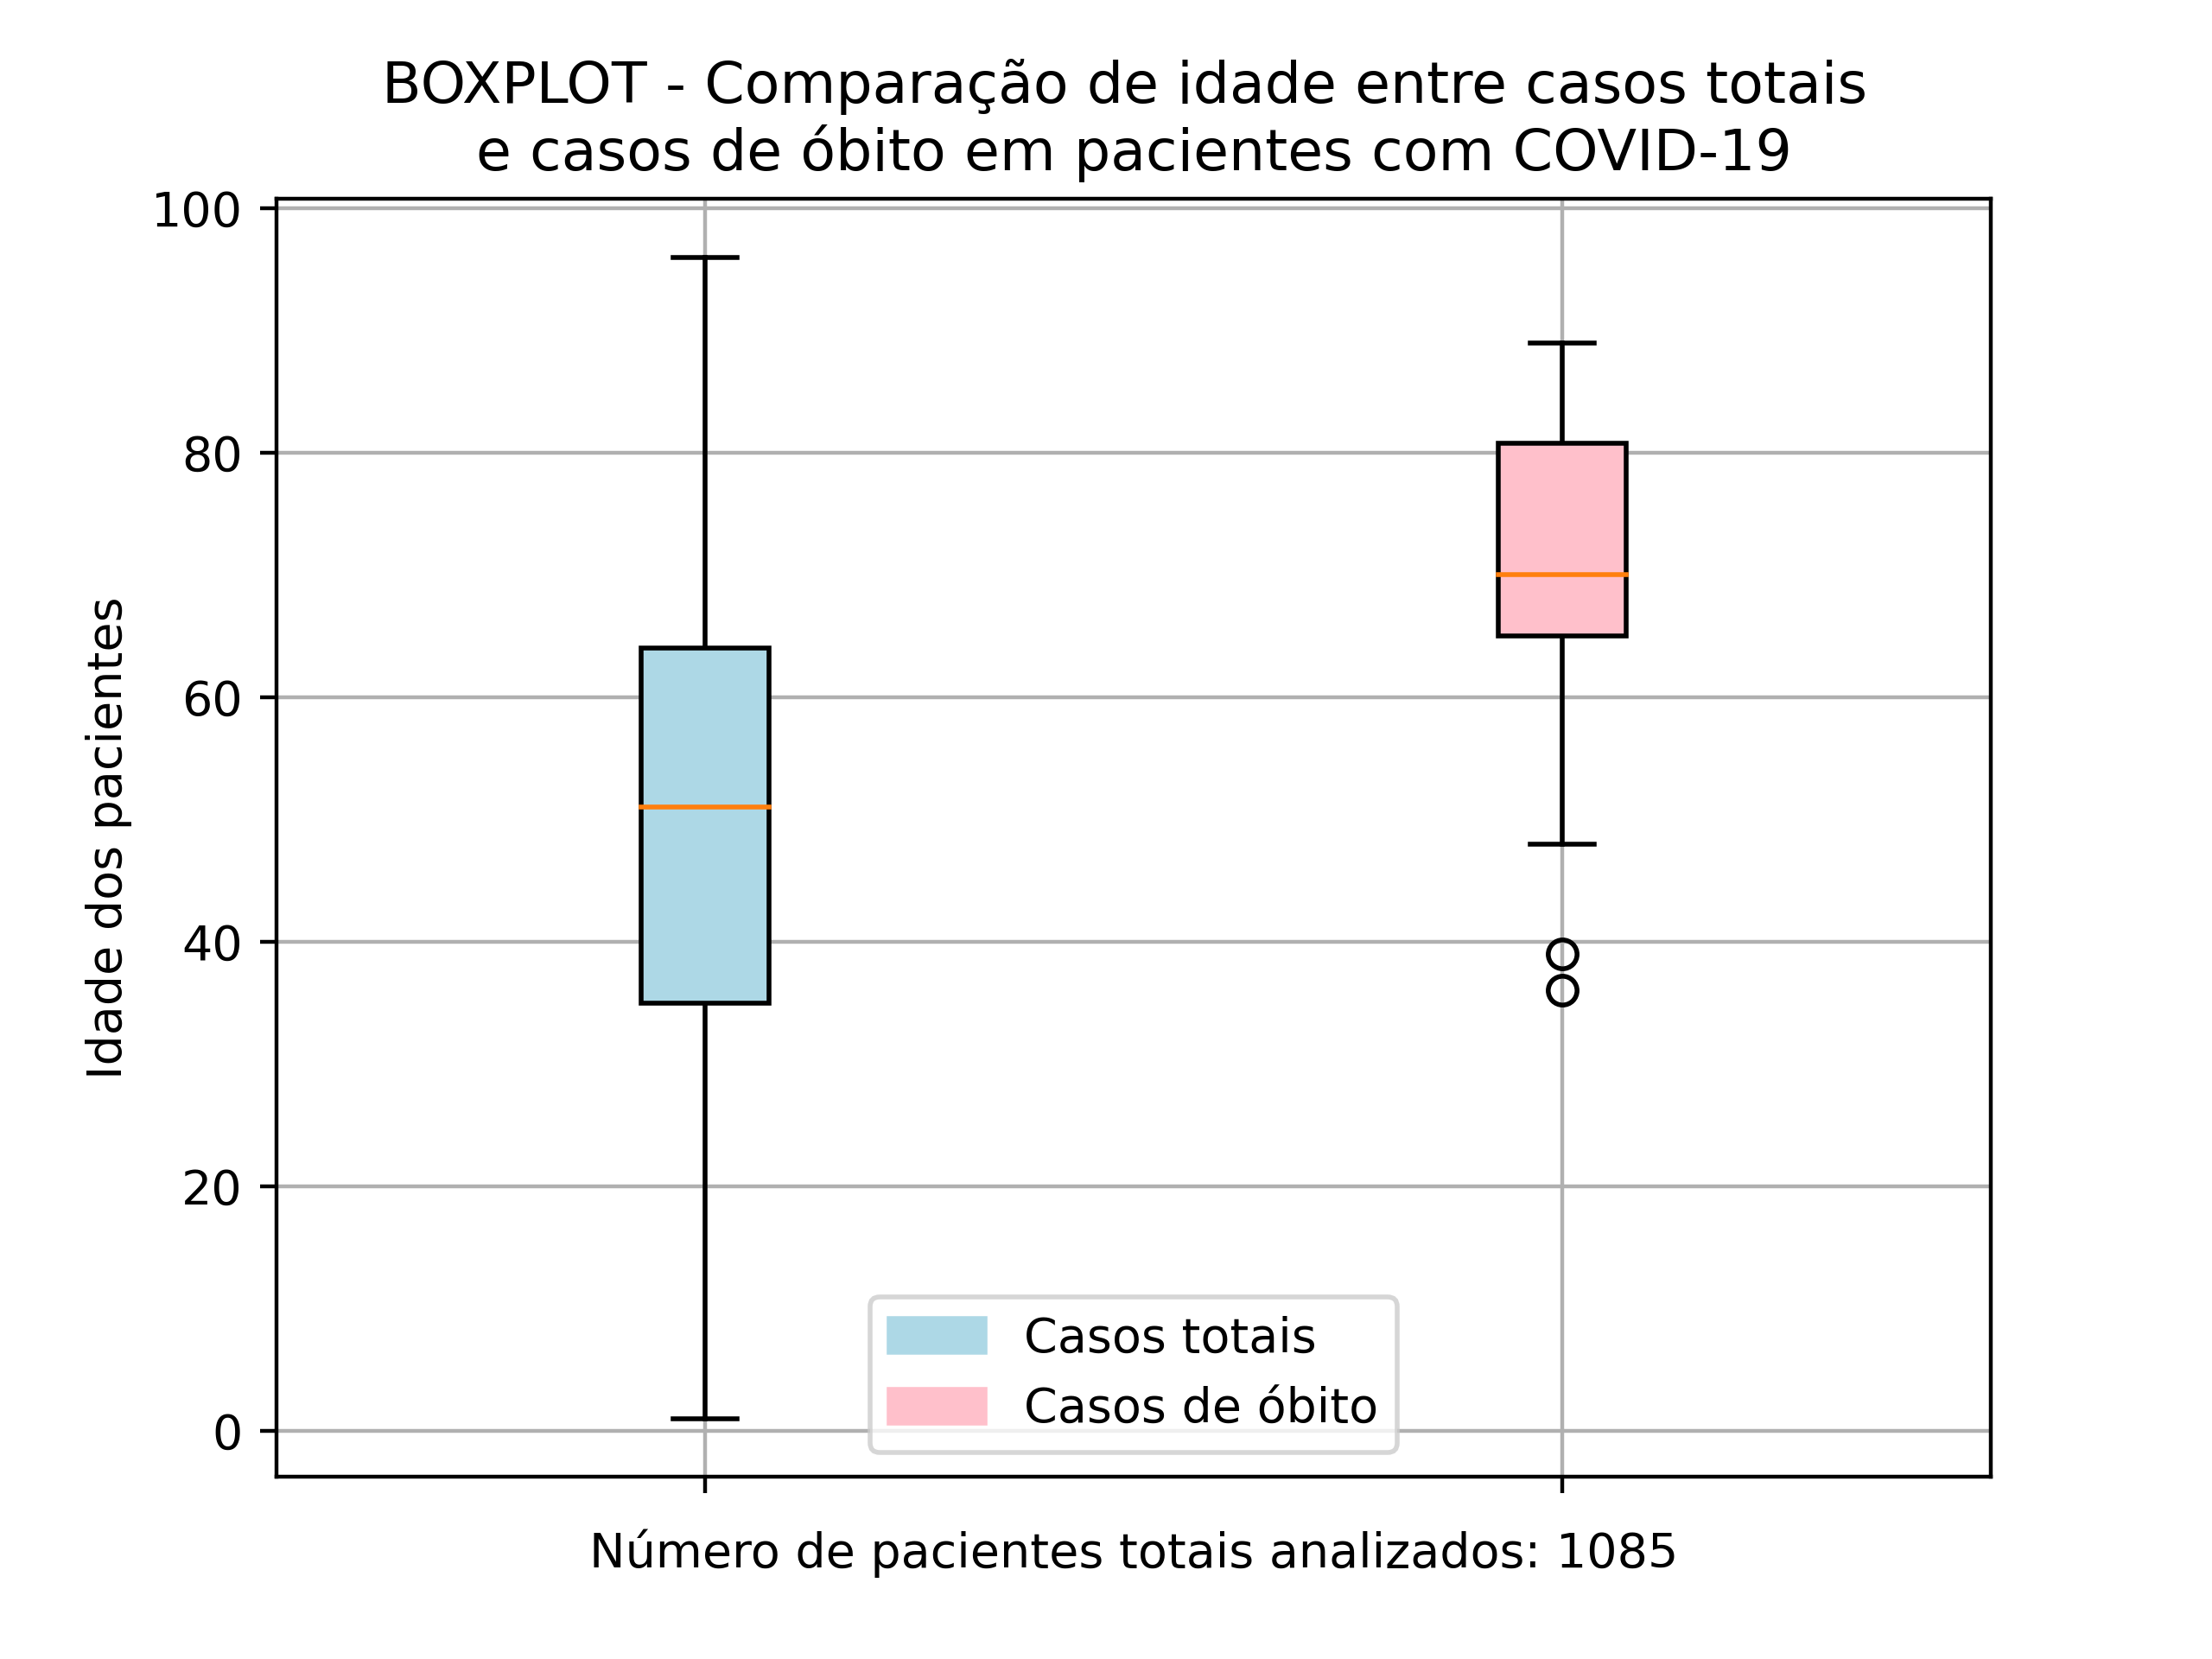 BOXPLOT-Comparacao-de-idade-entre-casos-totais-e-casos-de-obito-em-pacientes-com-COVID-19